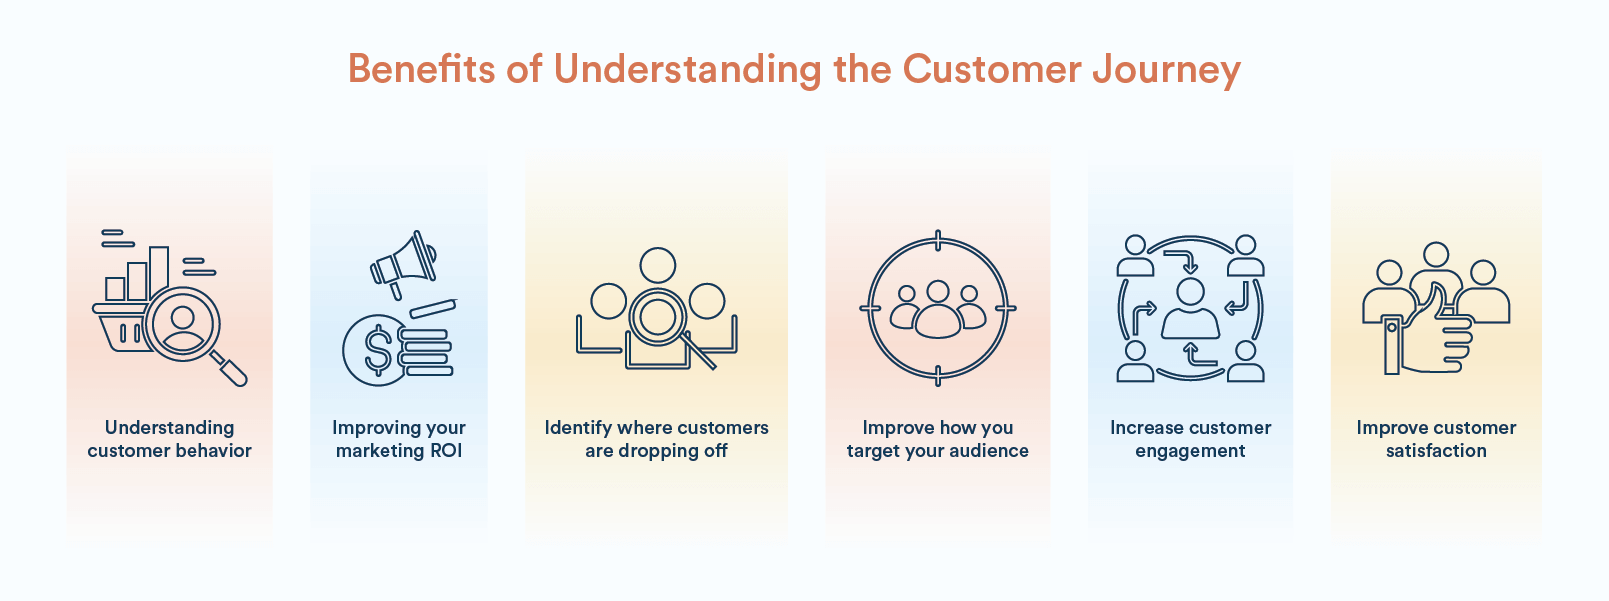 Benefits of Understanding the Customer Journey